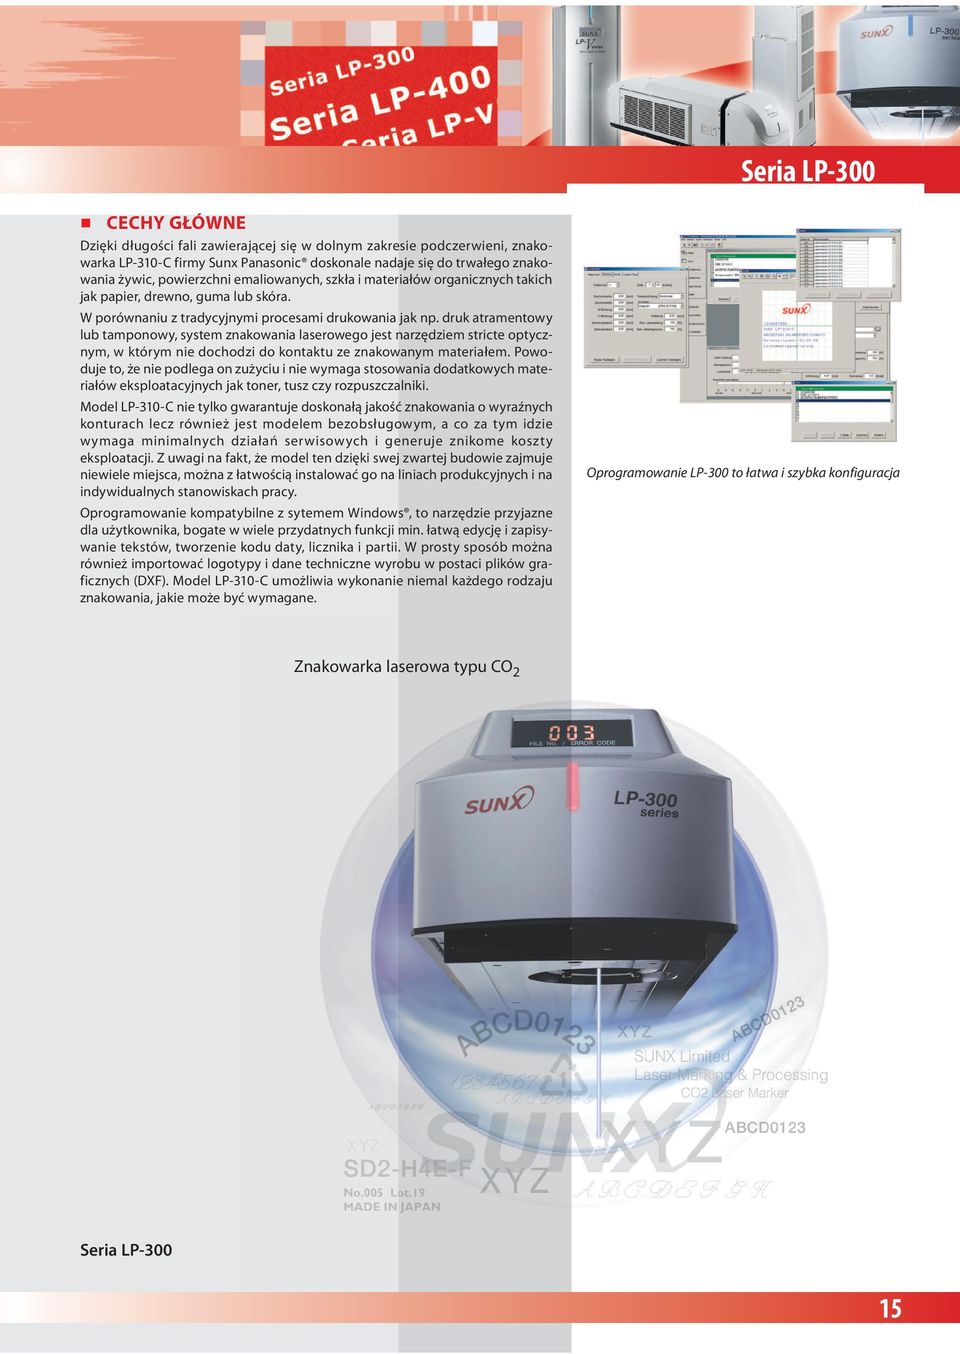 druk atramentowy lub tamponowy, system znakowania laserowego jest narzędziem stricte optycznym, w którym nie dochodzi do kontaktu ze znakowanym materiałem.